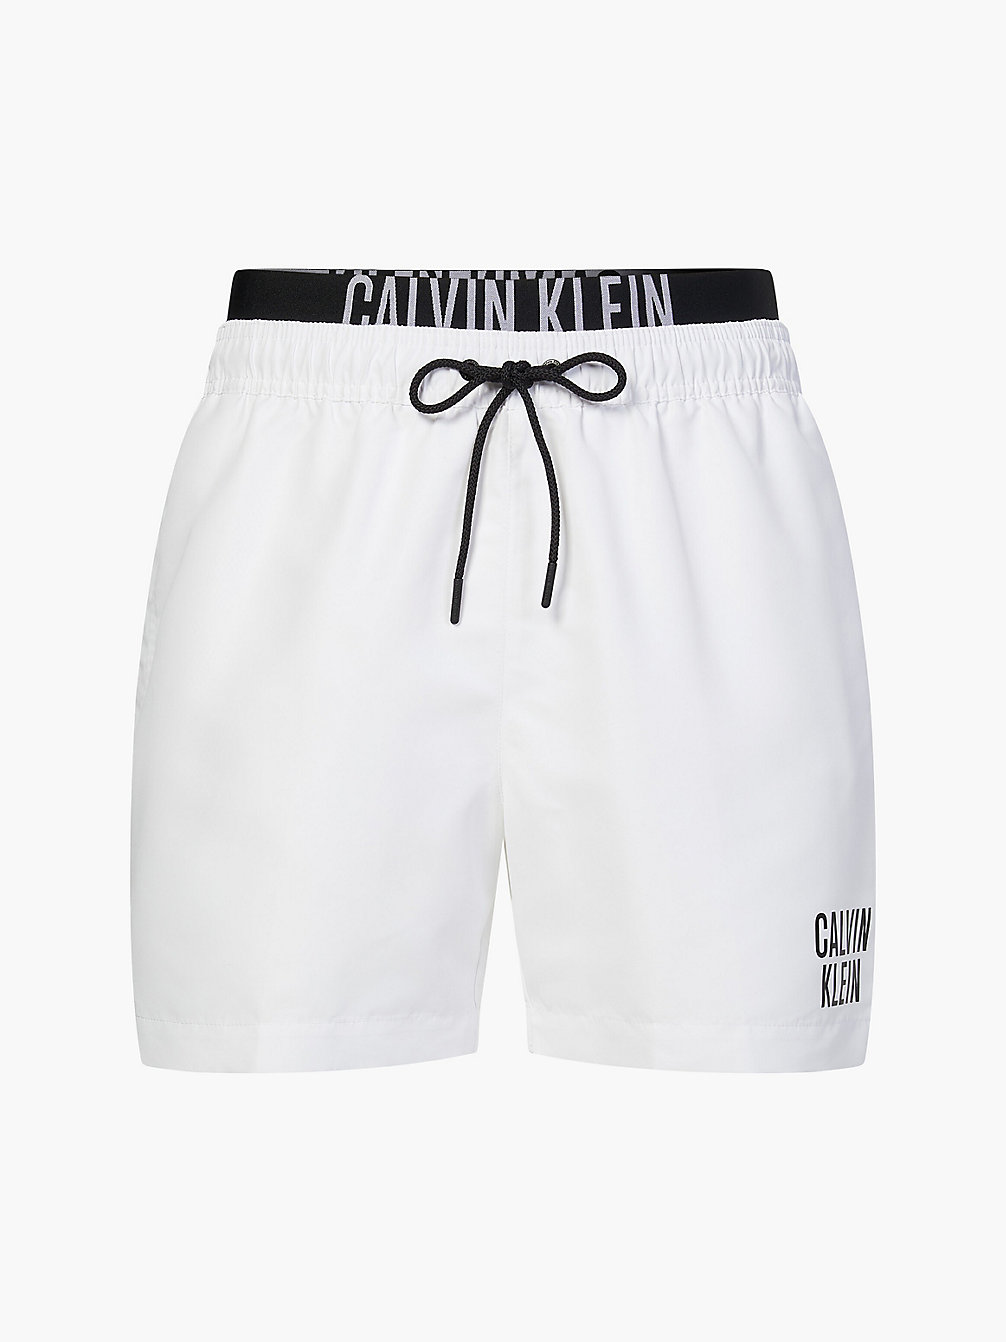 PVH CLASSIC WHITE Short De Bain Avec Double Ceinture - Intense Power undefined hommes Calvin Klein